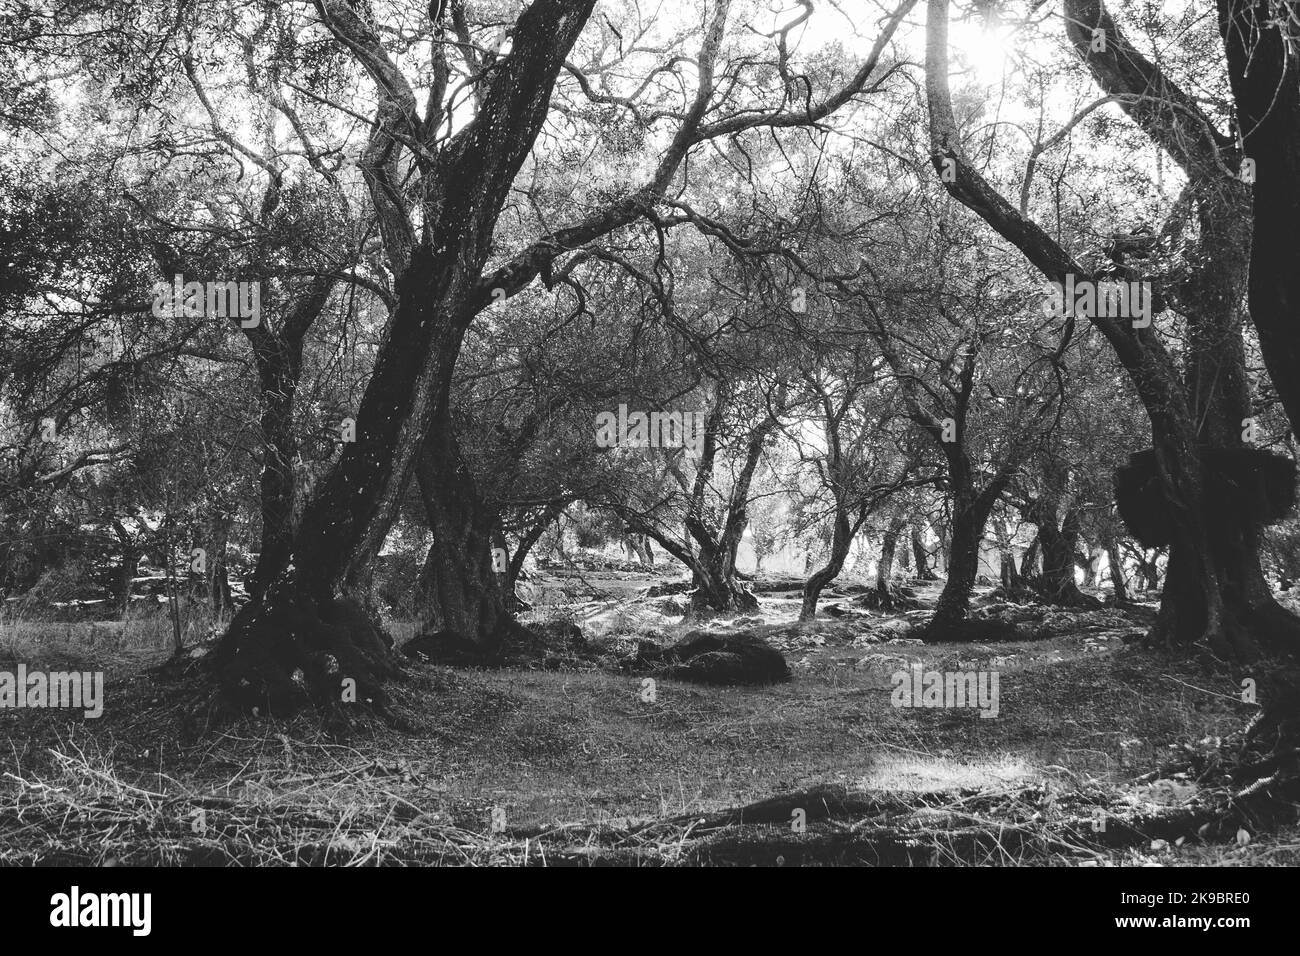 Corfou, Grèce. Une forêt d'arbres qui ressemble à une jungle abandonnée avec des arbres morts à travers laquelle brille l'été Banque D'Images